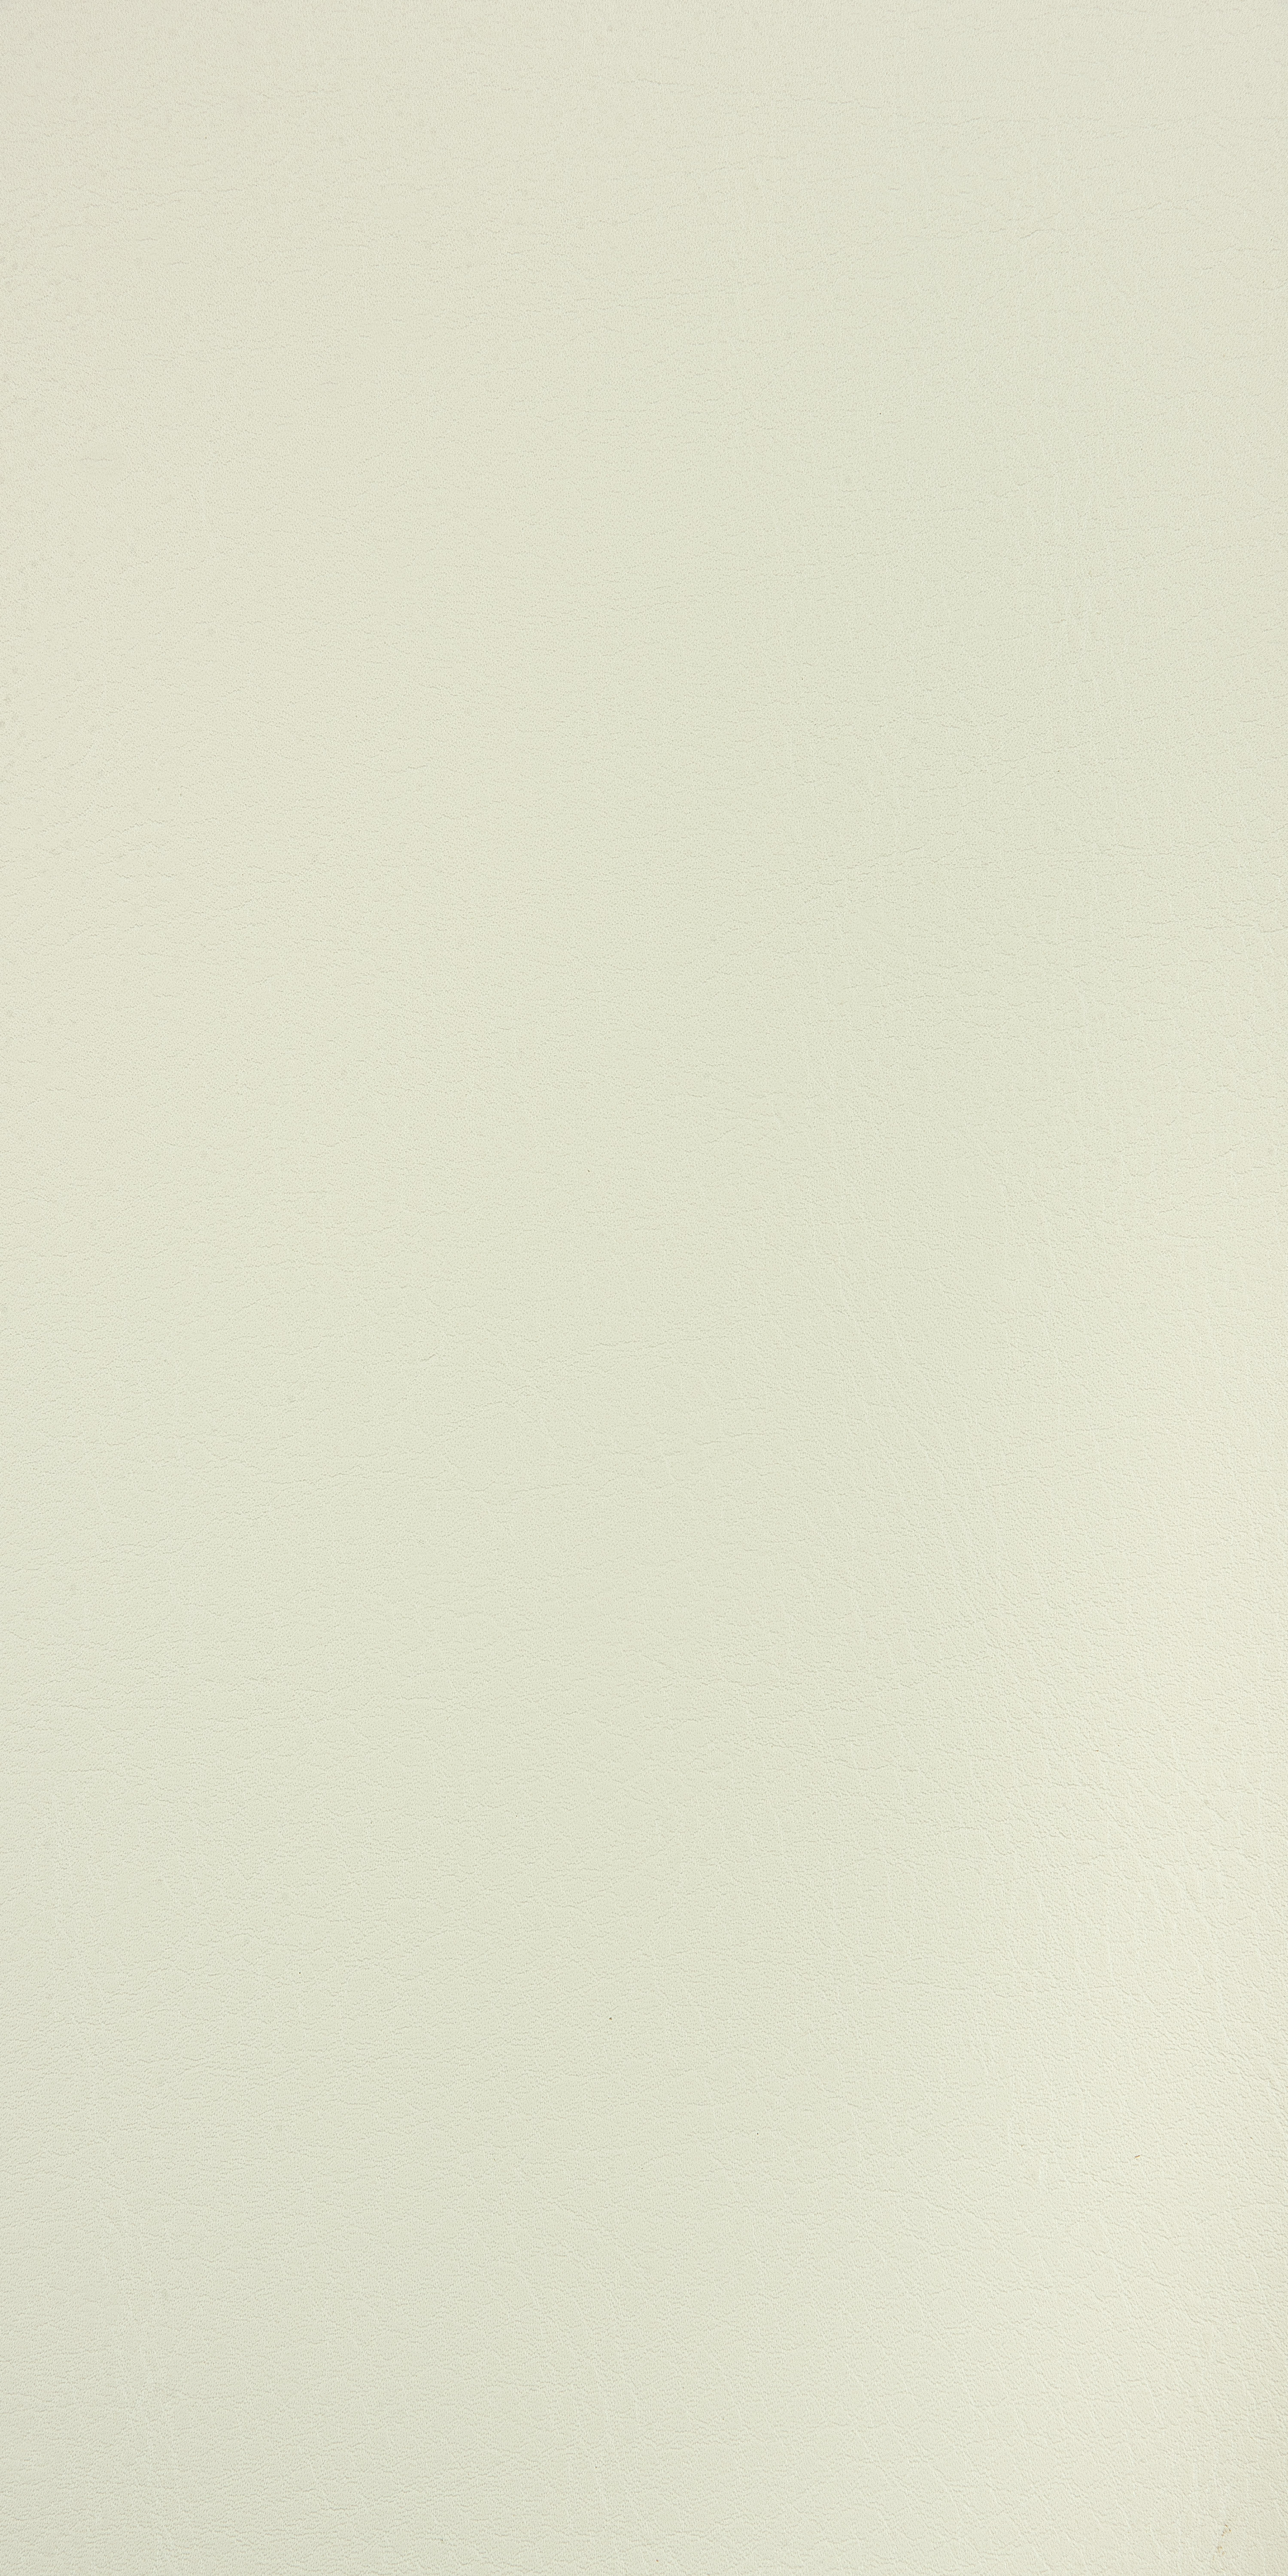 TTP-1026 鈦白皮革紋